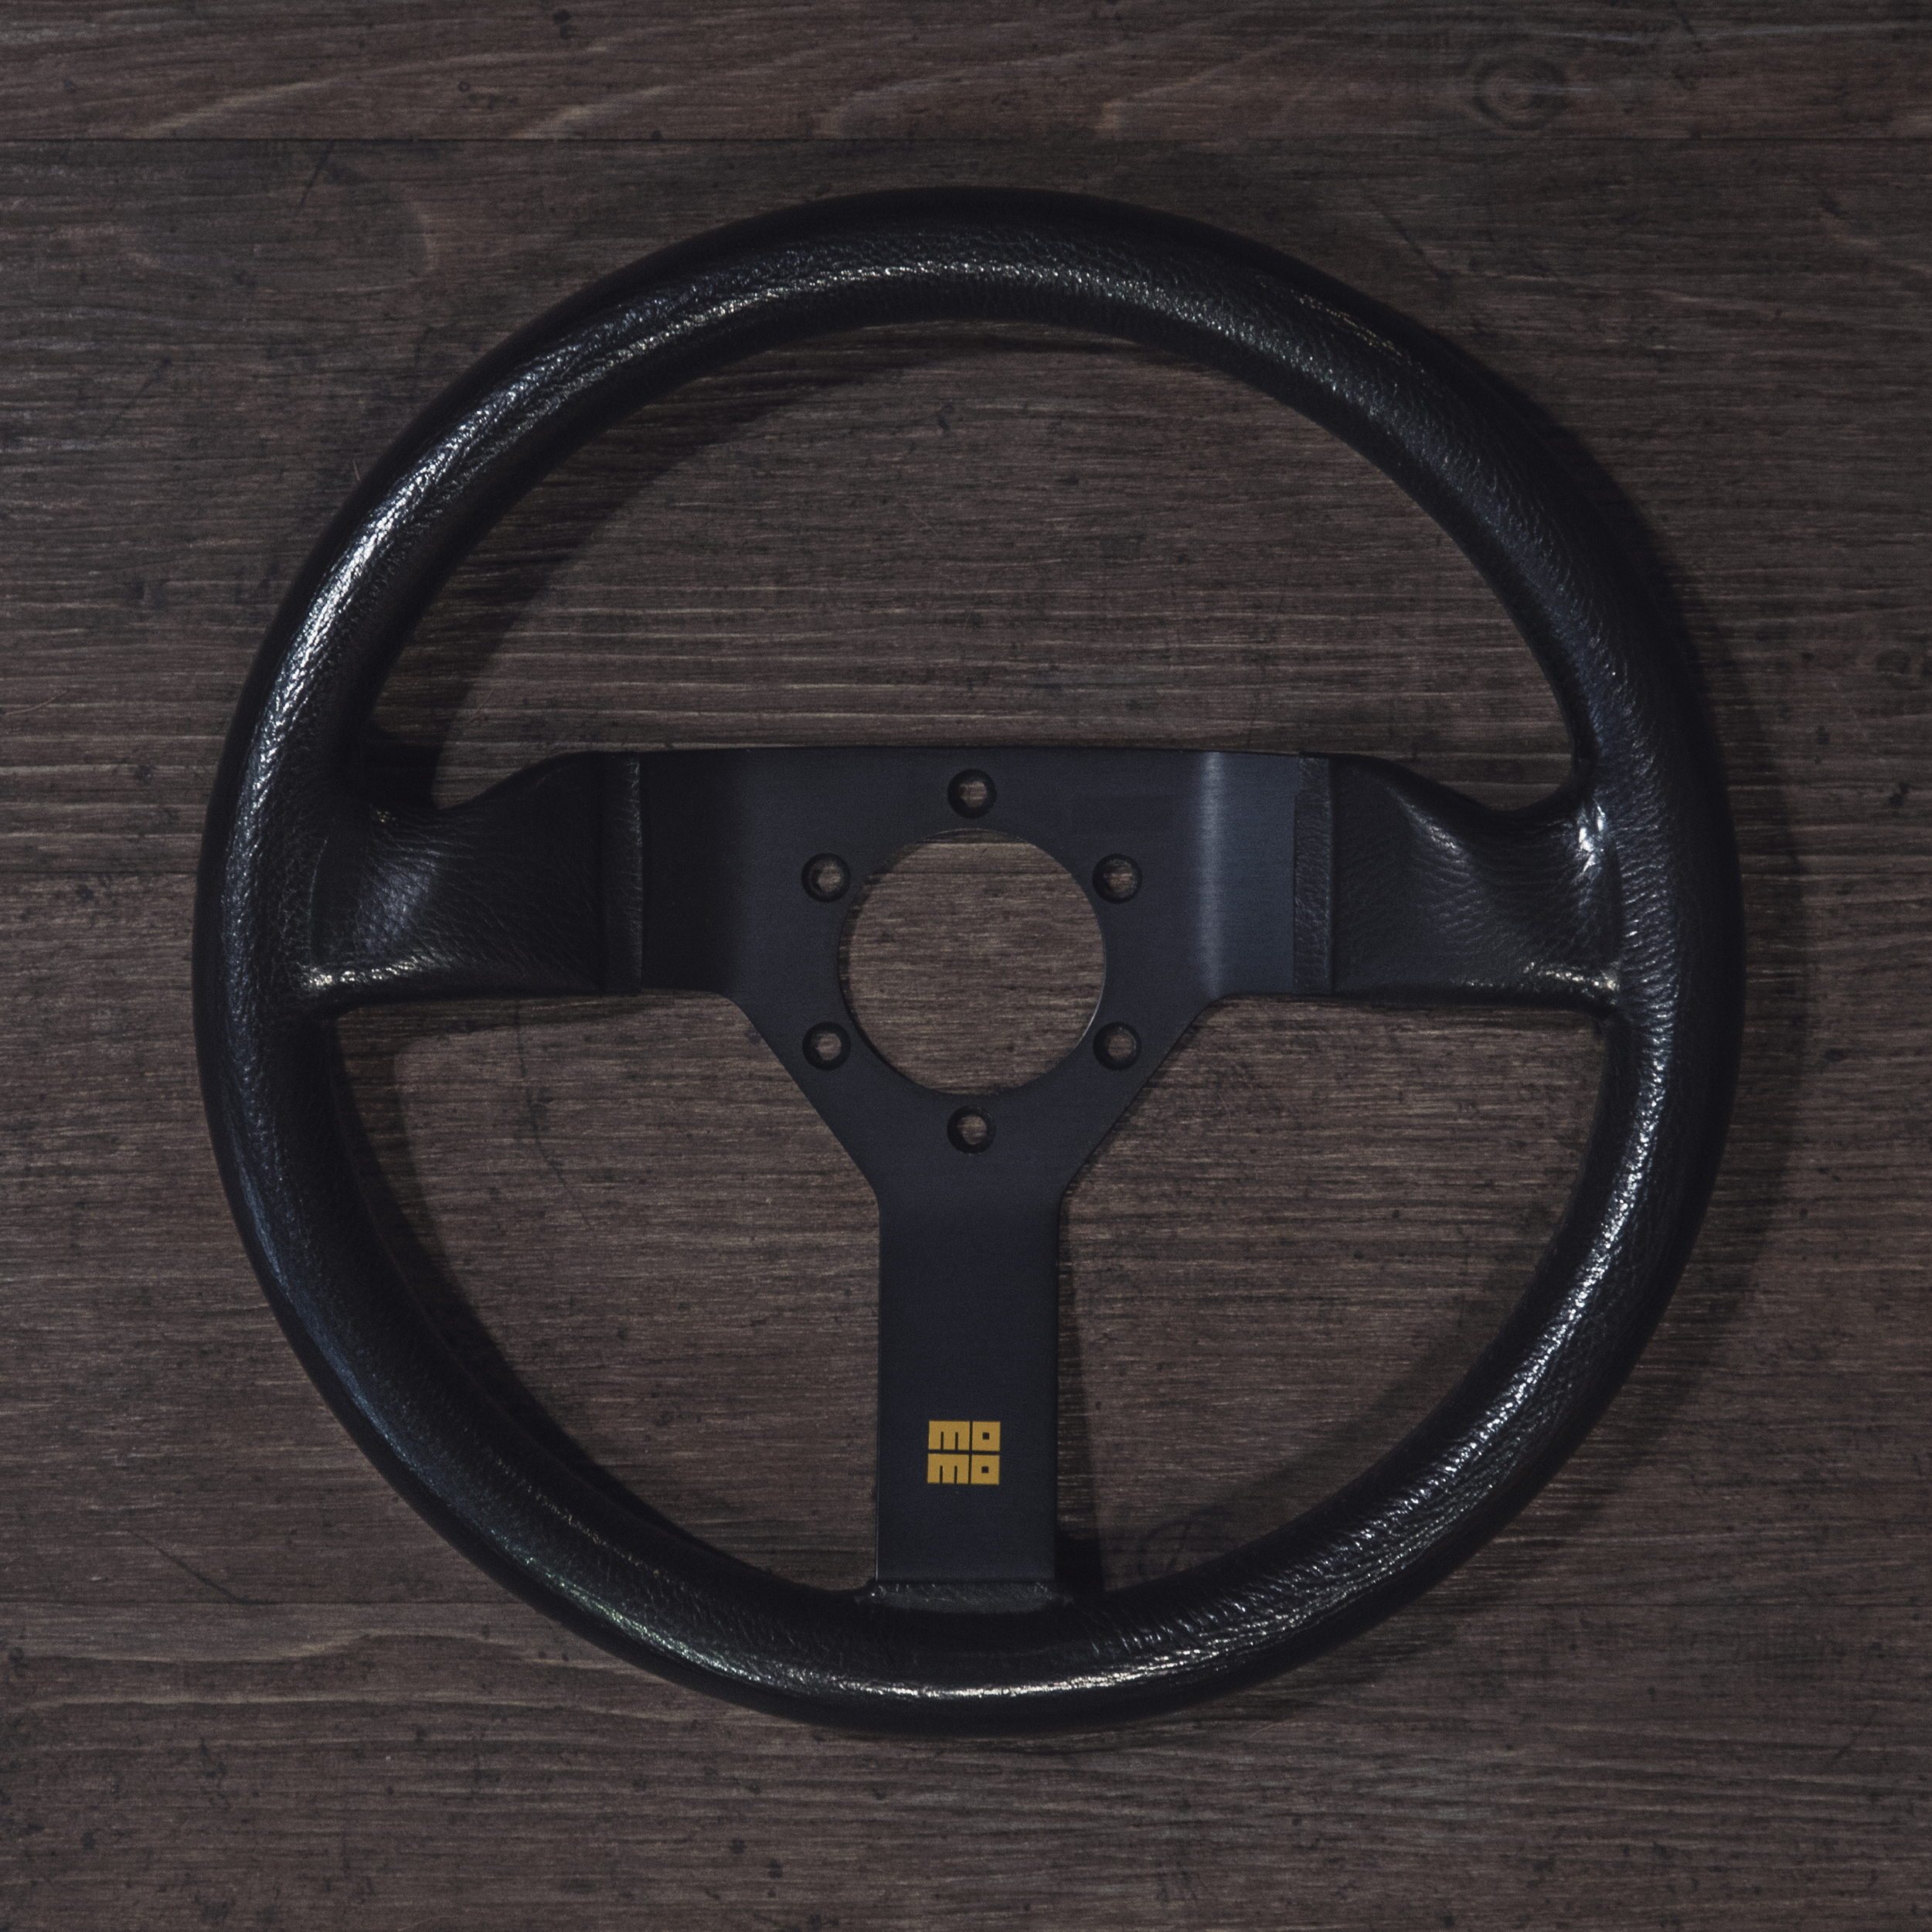 steering_wheels_momo_monte_carlo_b_01.jpg